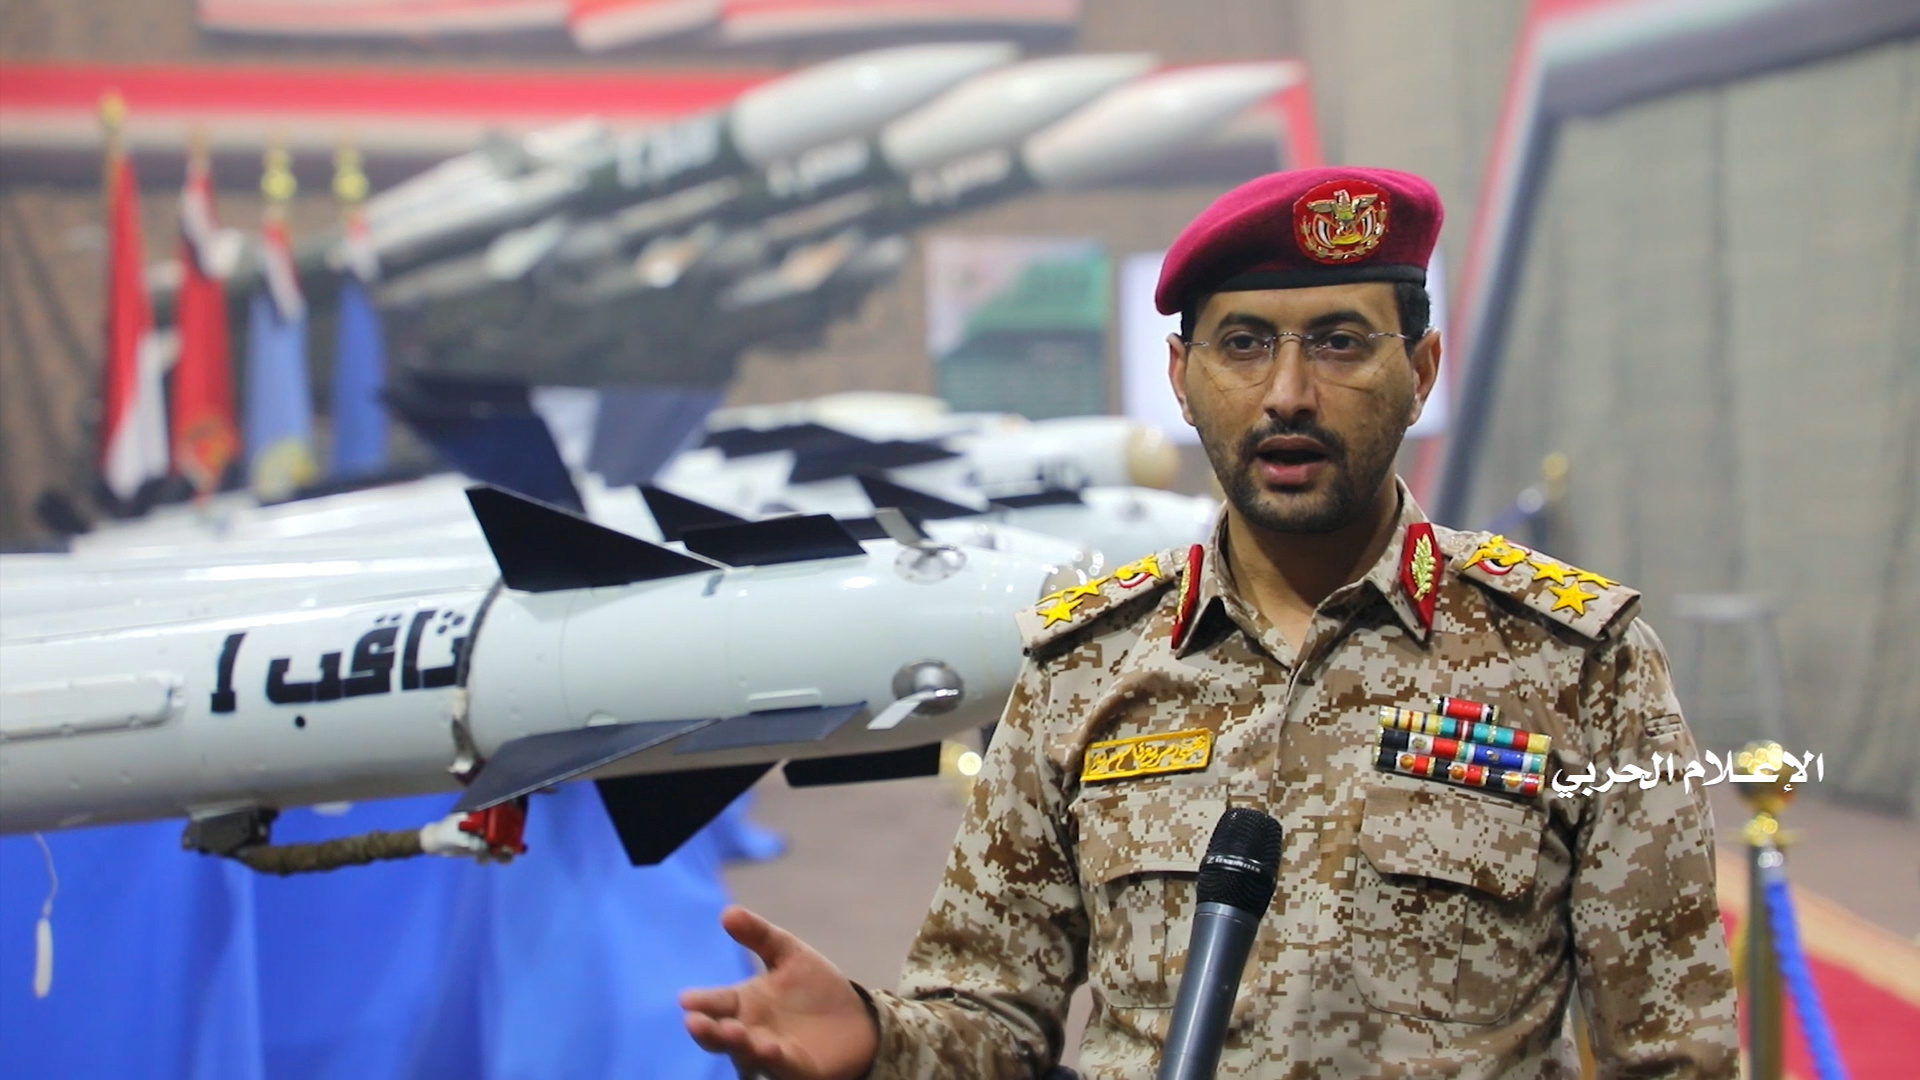 فضيحة جديدة للصناعات الأمريكية.. كيف تمكنت قوات "أنصار الله" من إسقاط طائرة تجسس أمريكية في اليمن ؟ + صور وفيديو